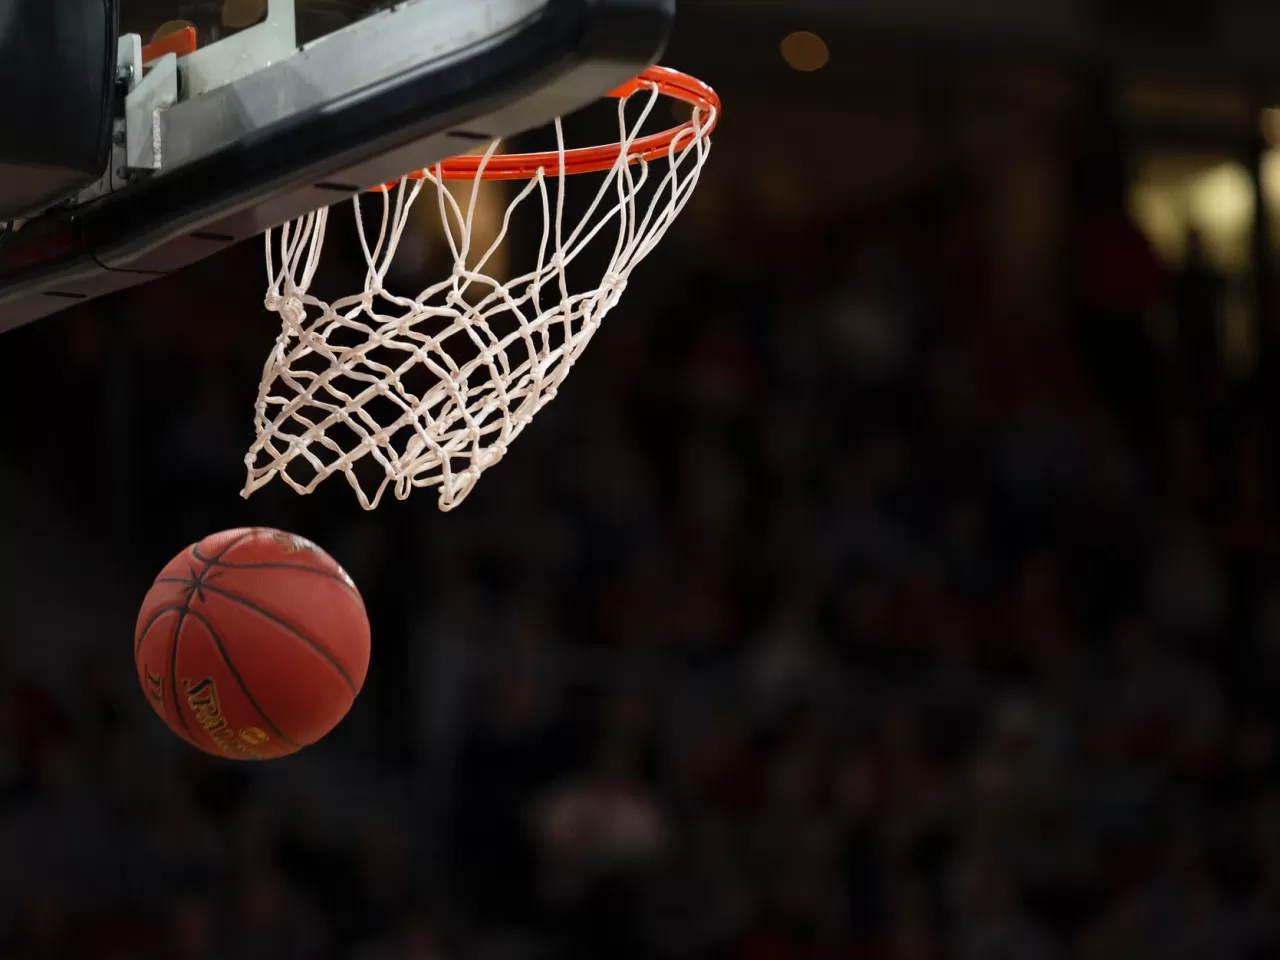 Basketbol Toplarının Özellikleri ve En İyi 10 Basketbol Topu